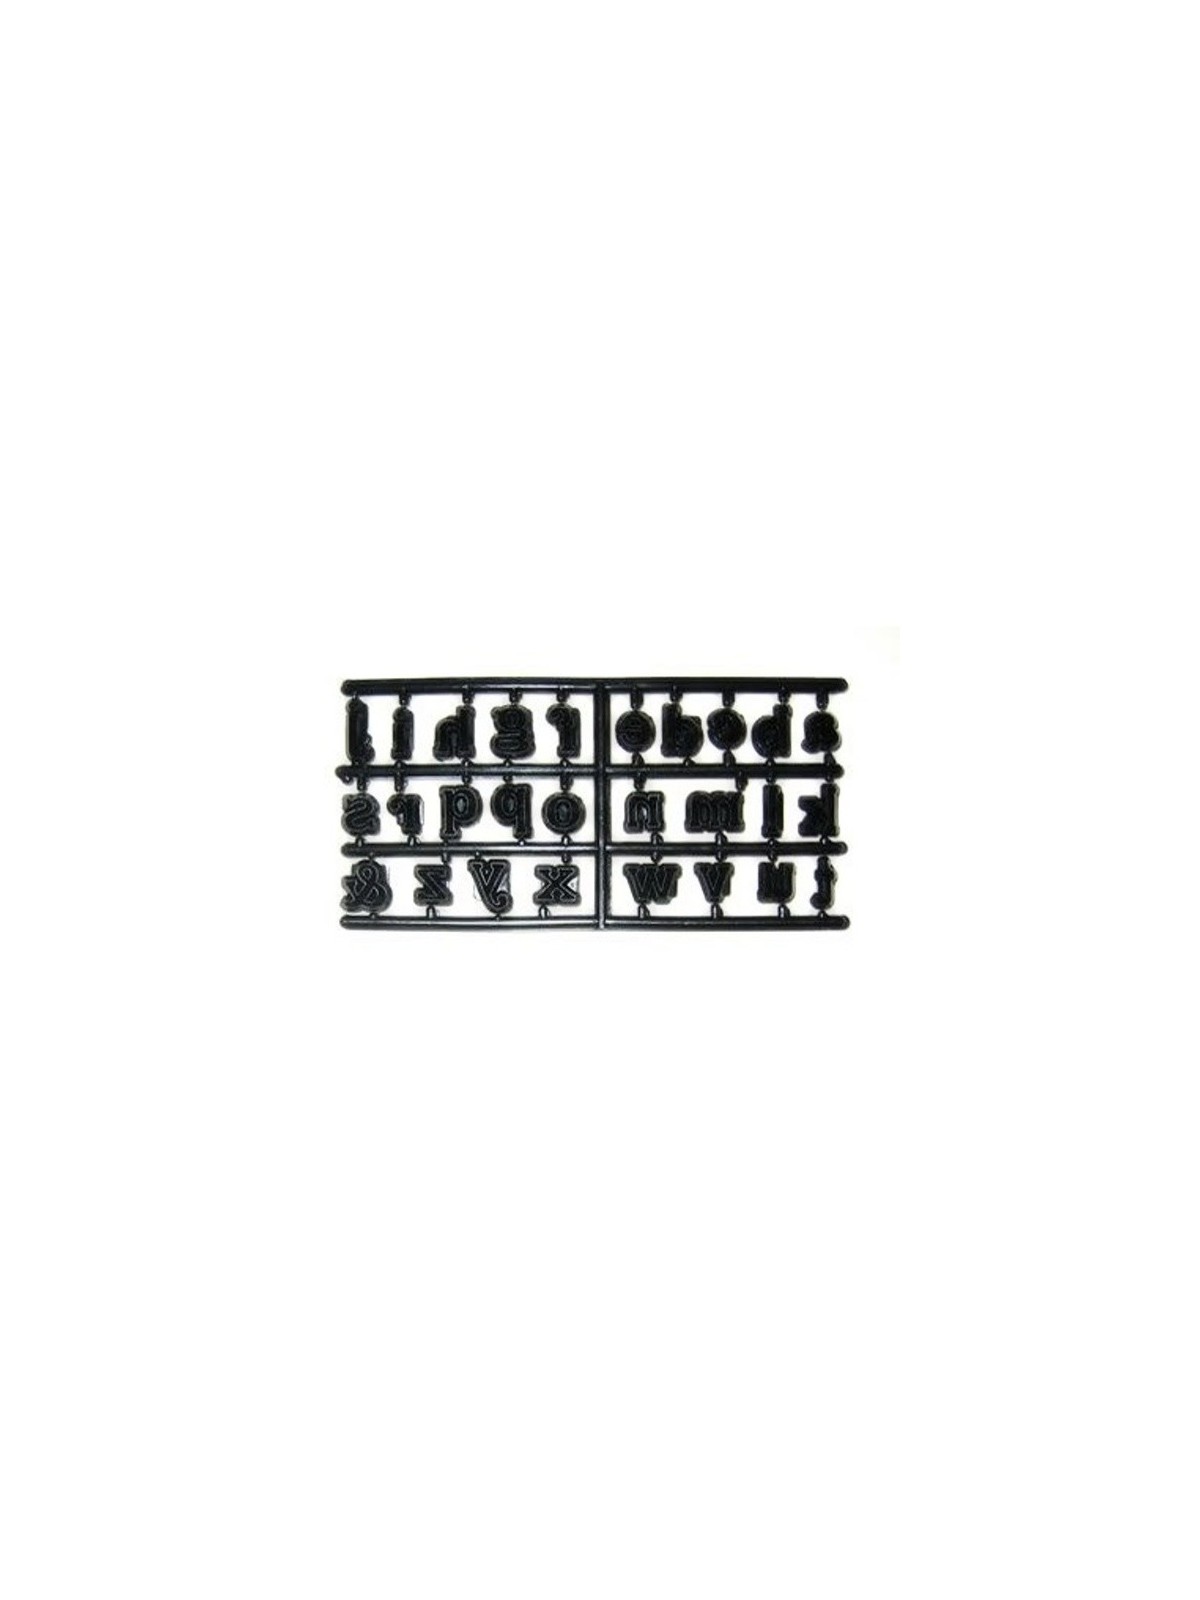 Cutters patchwork - alphabet - lowercase 27pcs